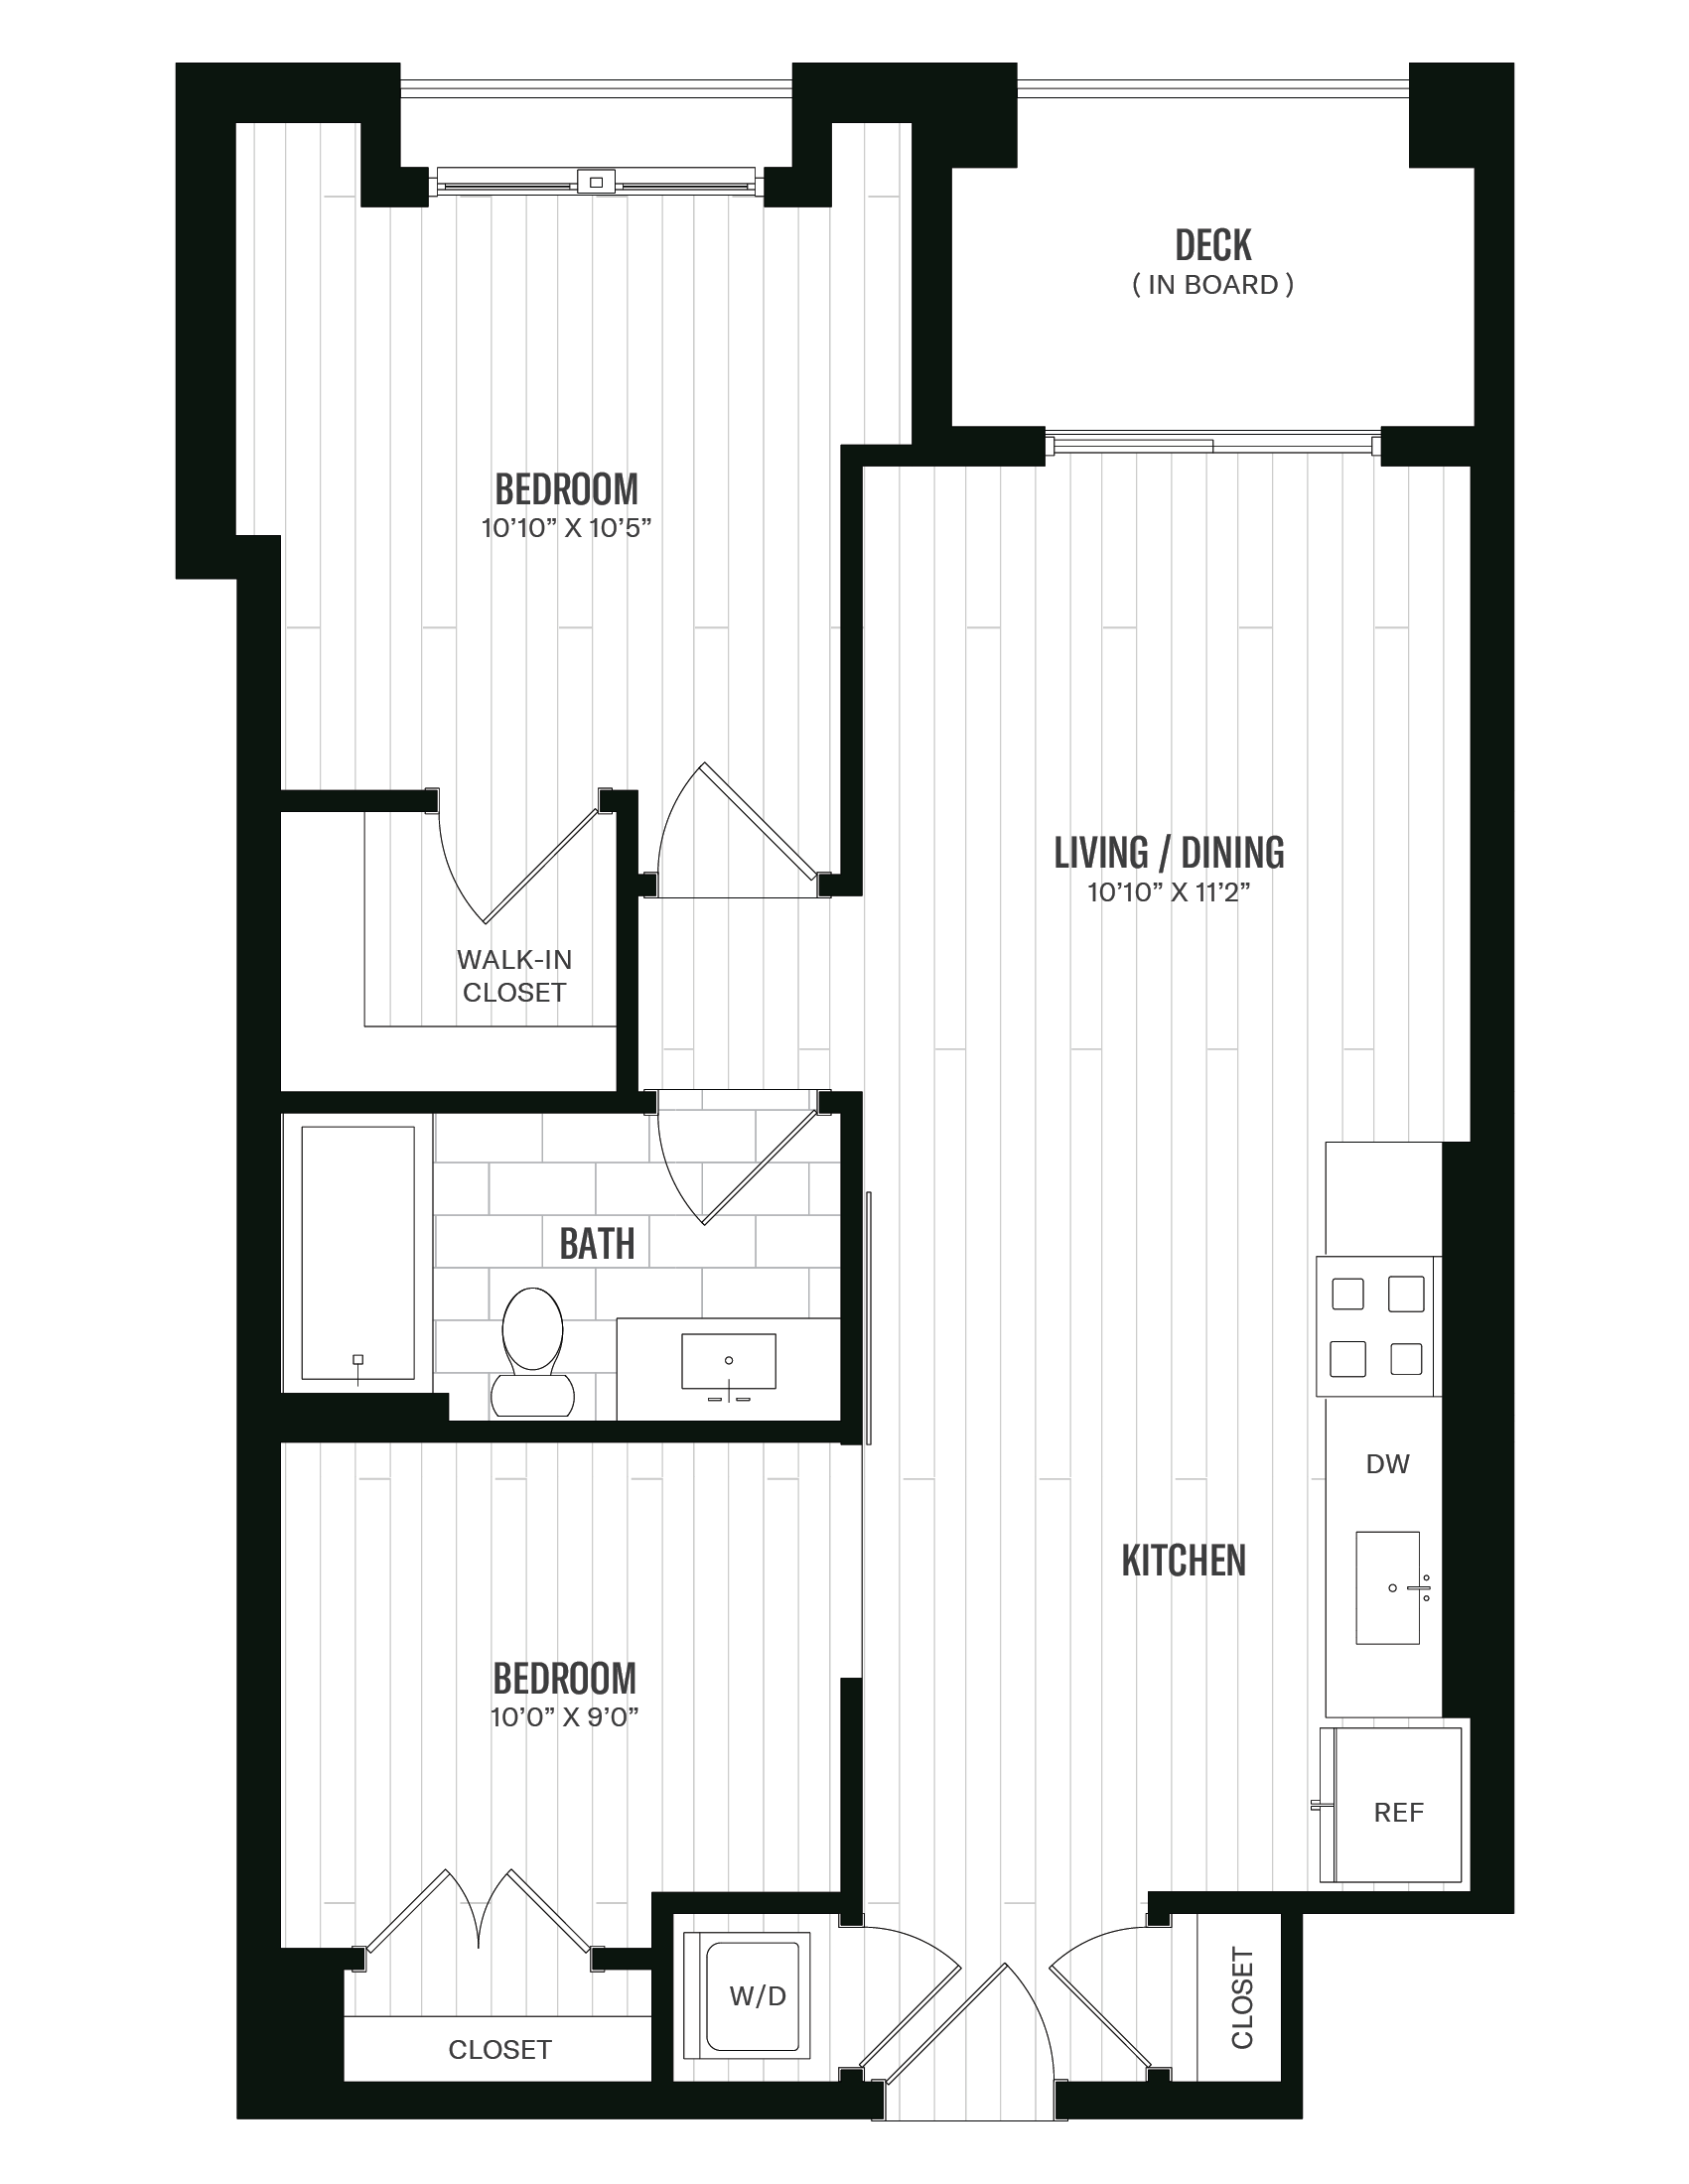 Floorplan image of unit 542